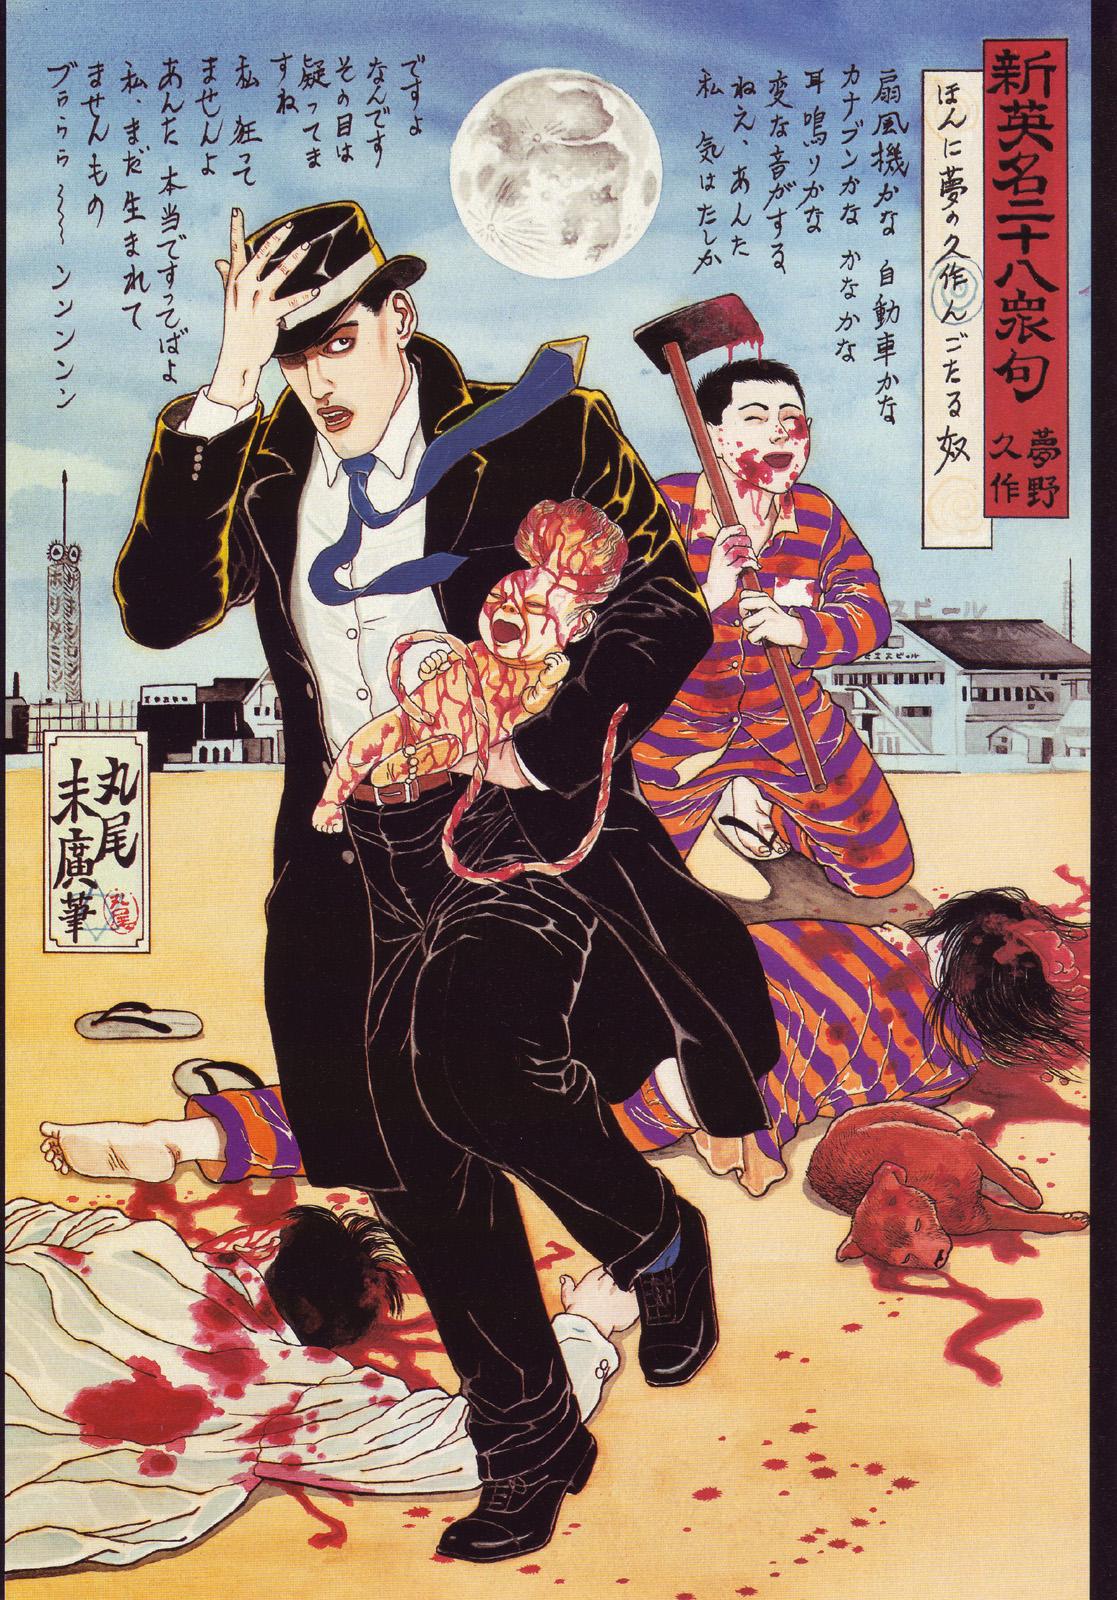 江戸昭和競作 - Bloody Ukiyo-e in 1866 & 1988 55